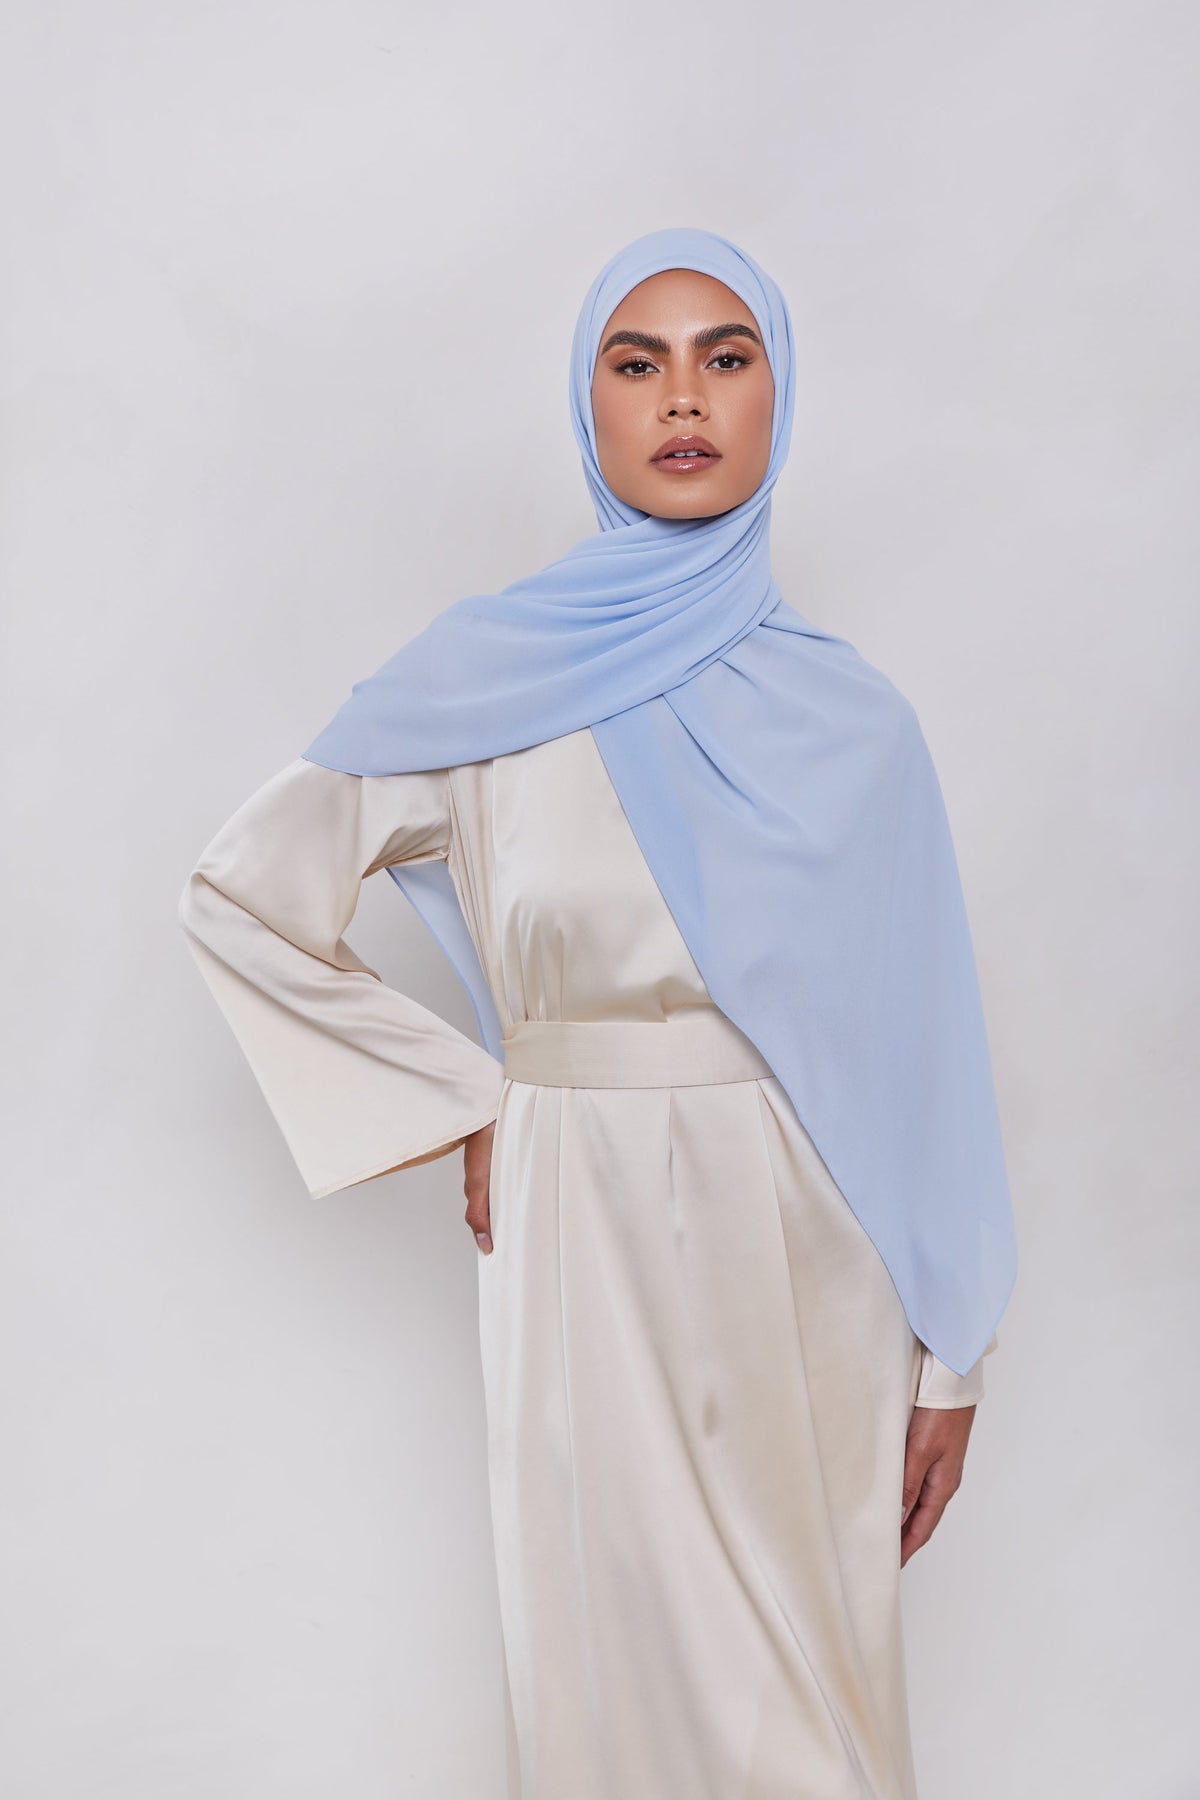 Essential Chiffon Hijab - Baby Blue Scarves & Shawls epschoolboard 